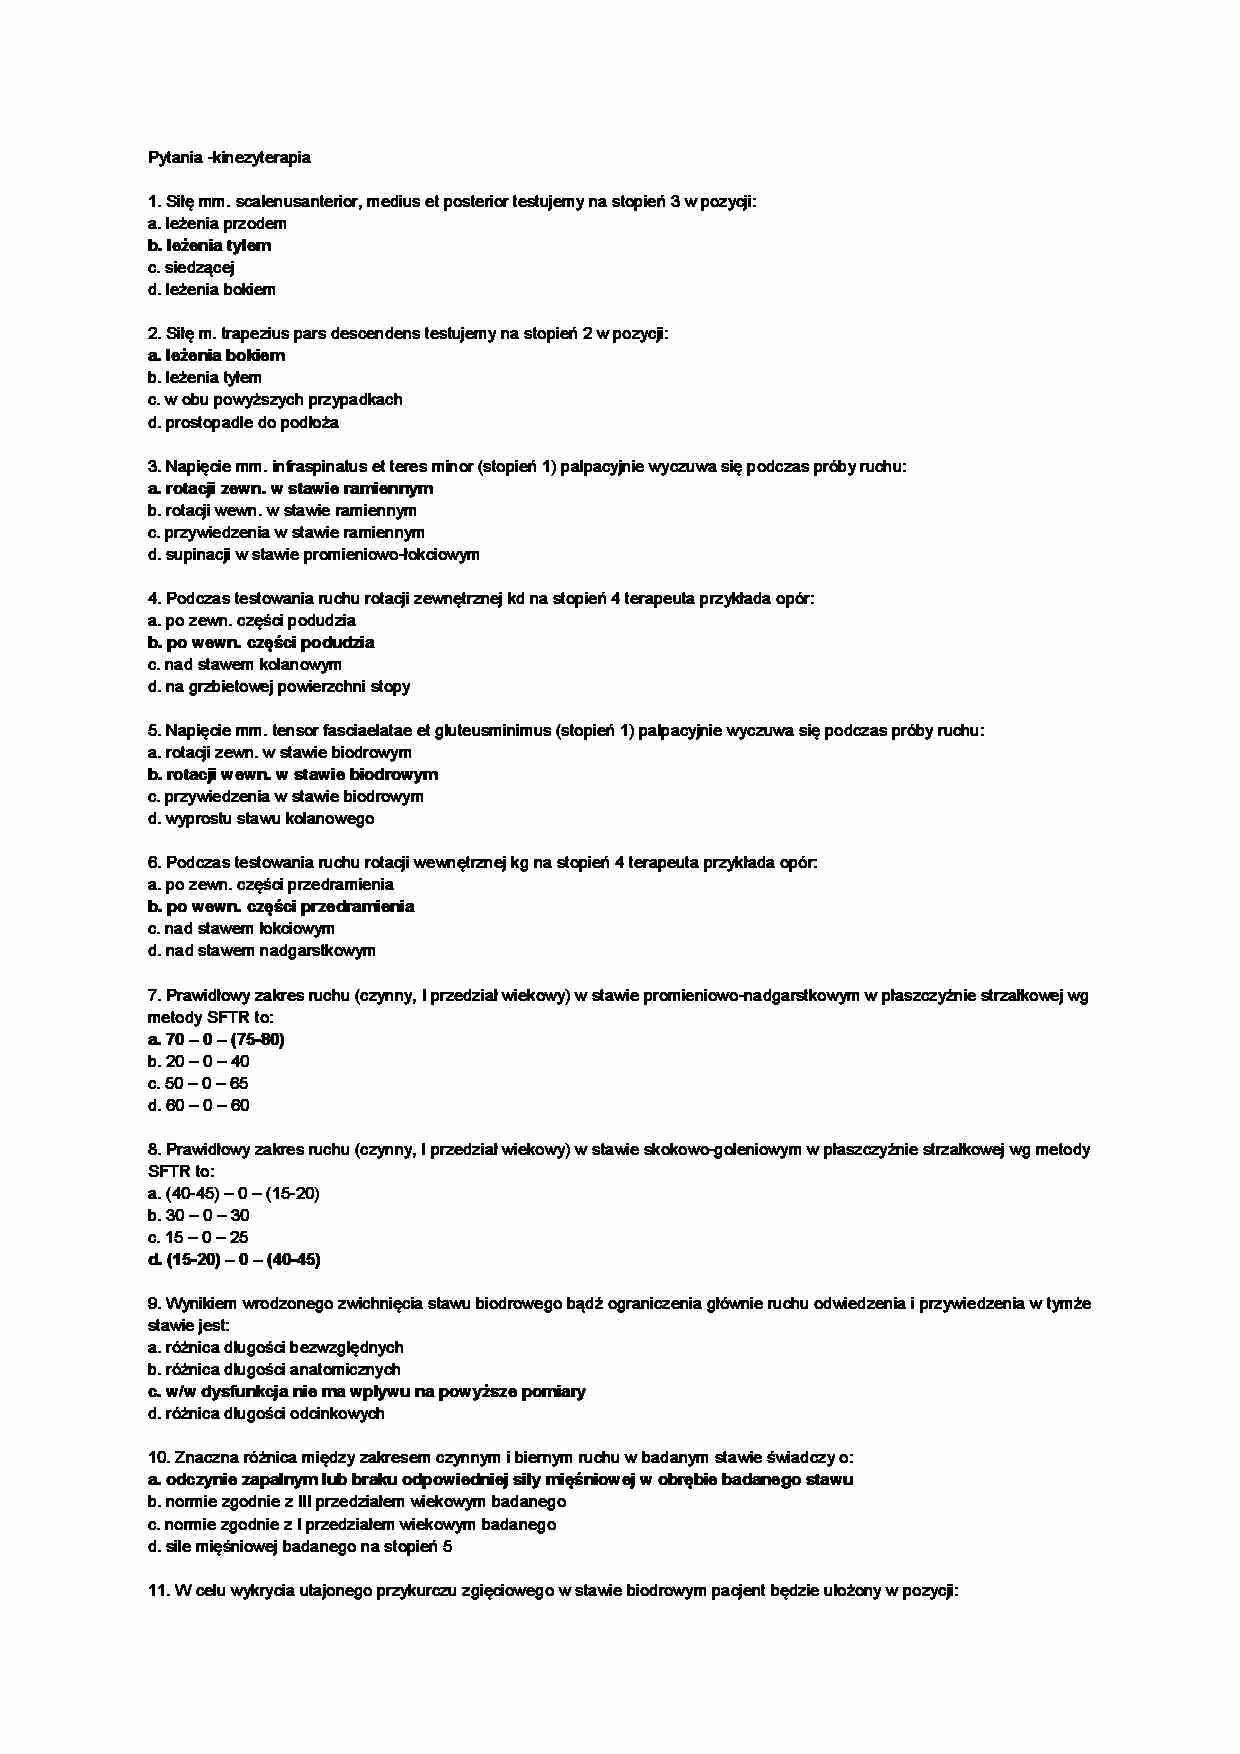 Kinezyterapia - pytania i odpowiedzi  - strona 1